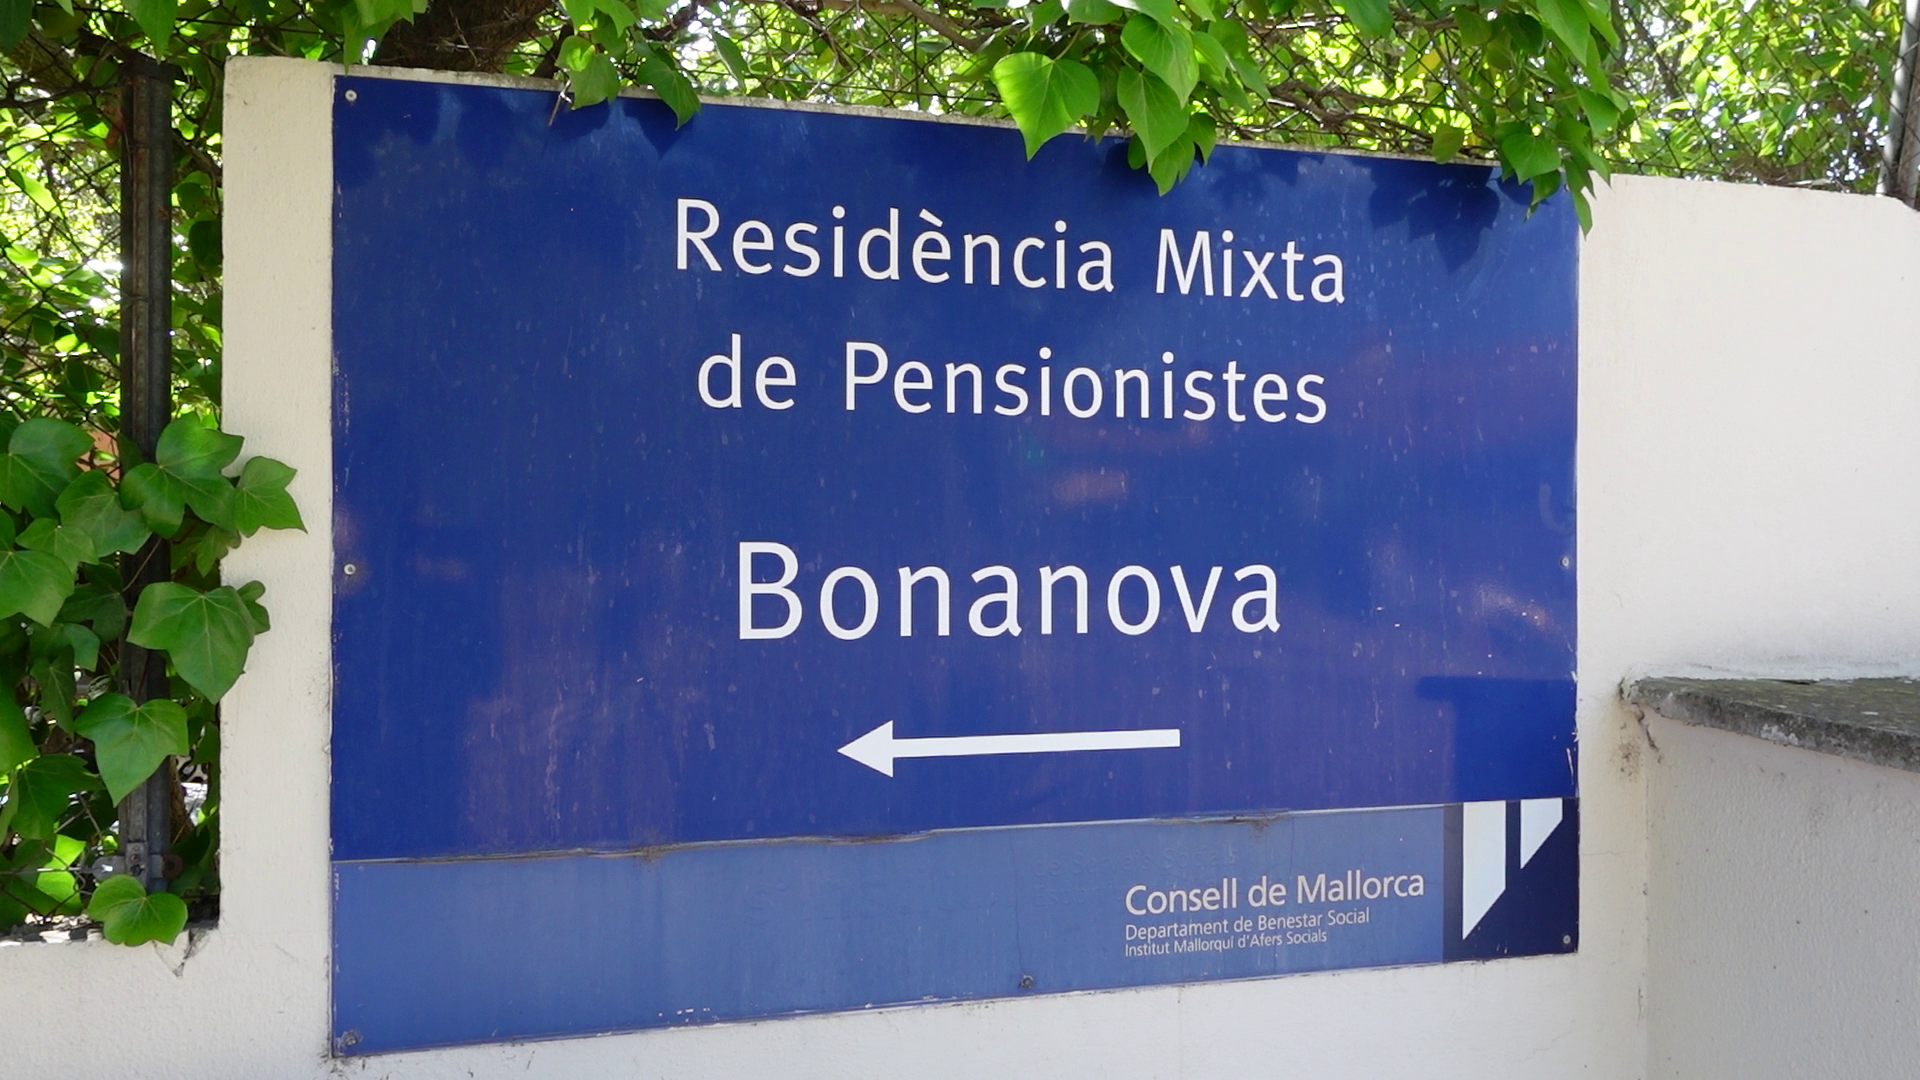 La residencia Bonanova pertenece al IMAS